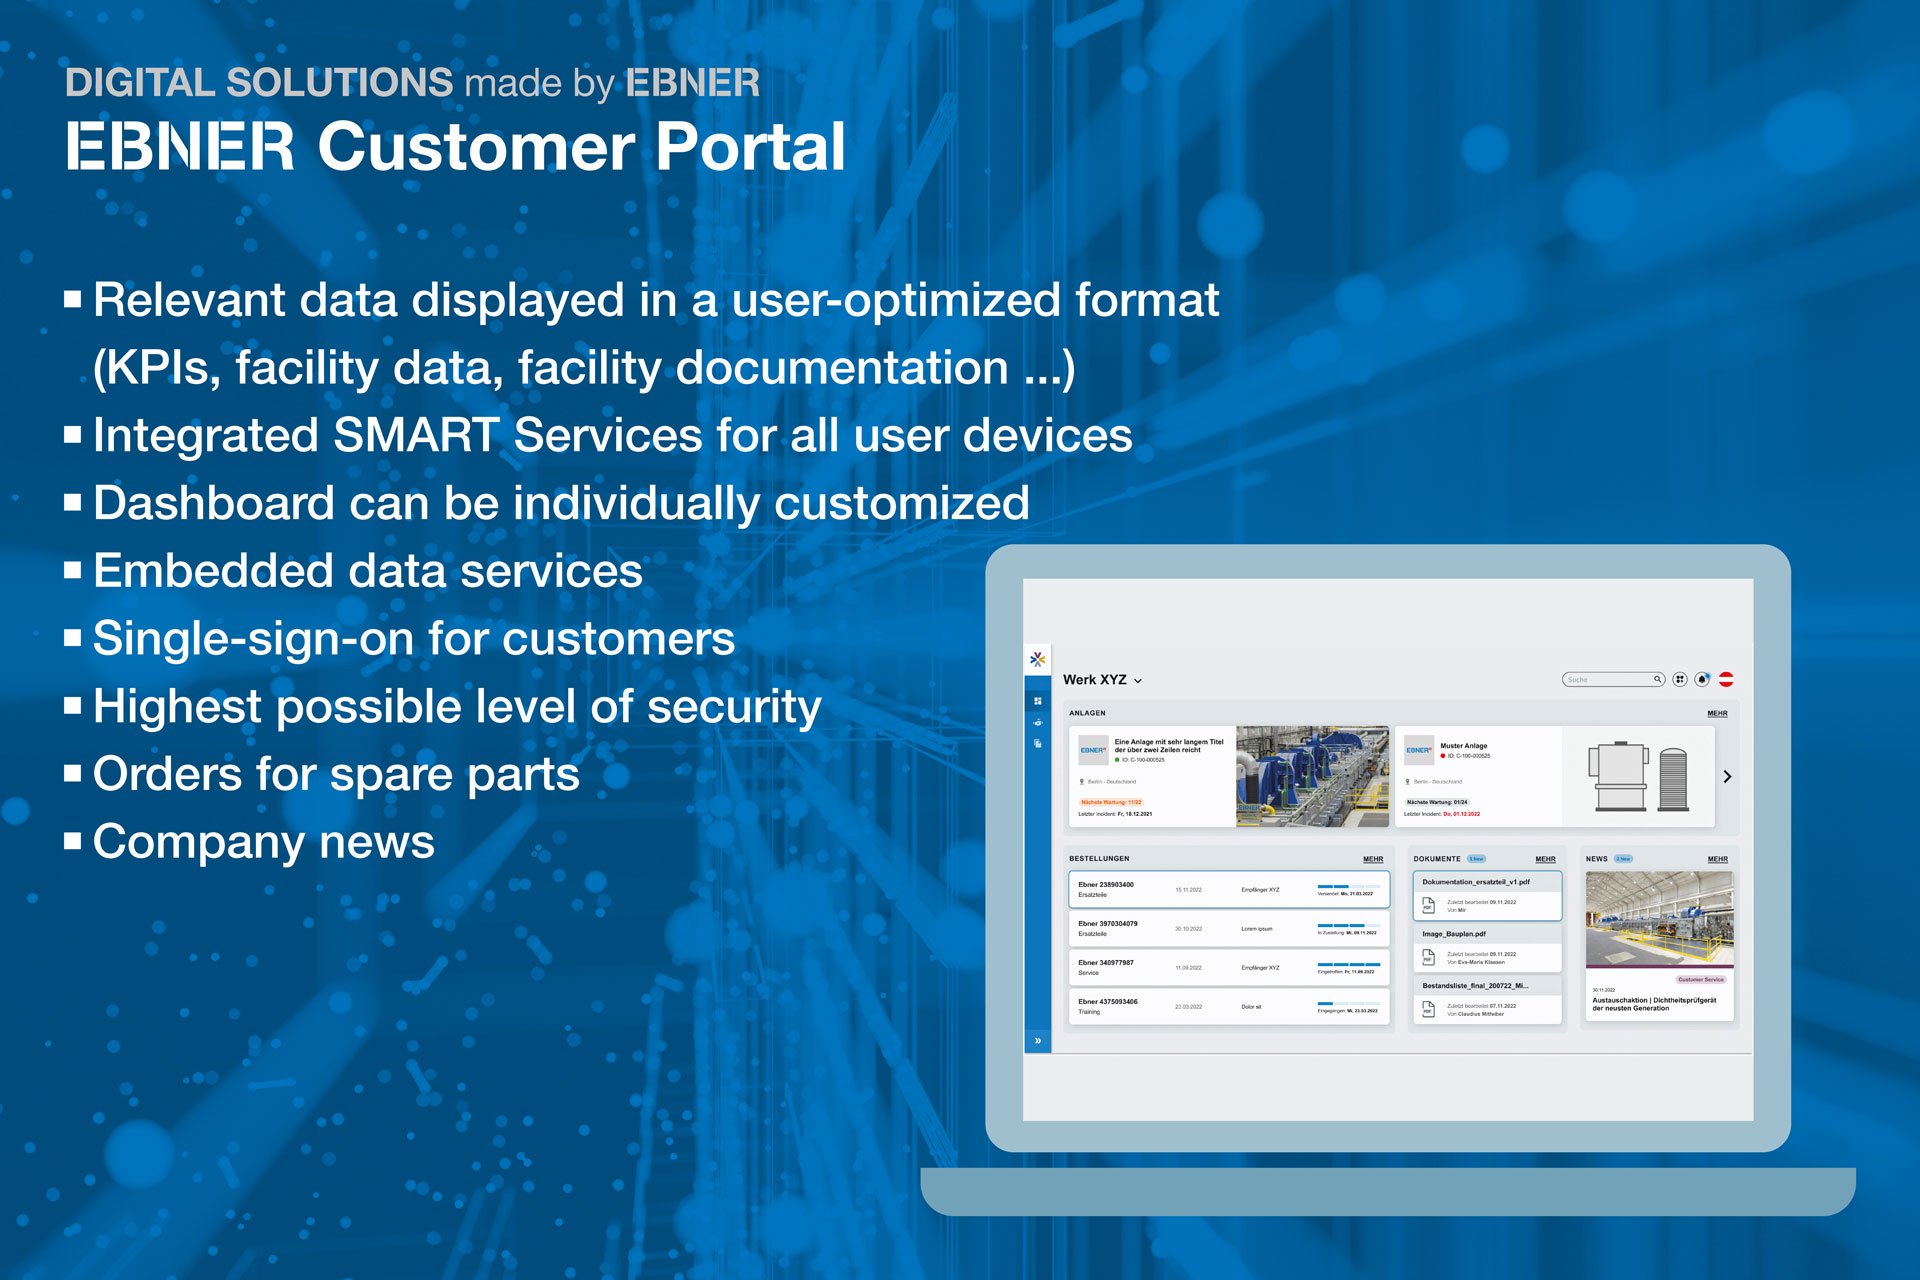 EBNER Customer Portal